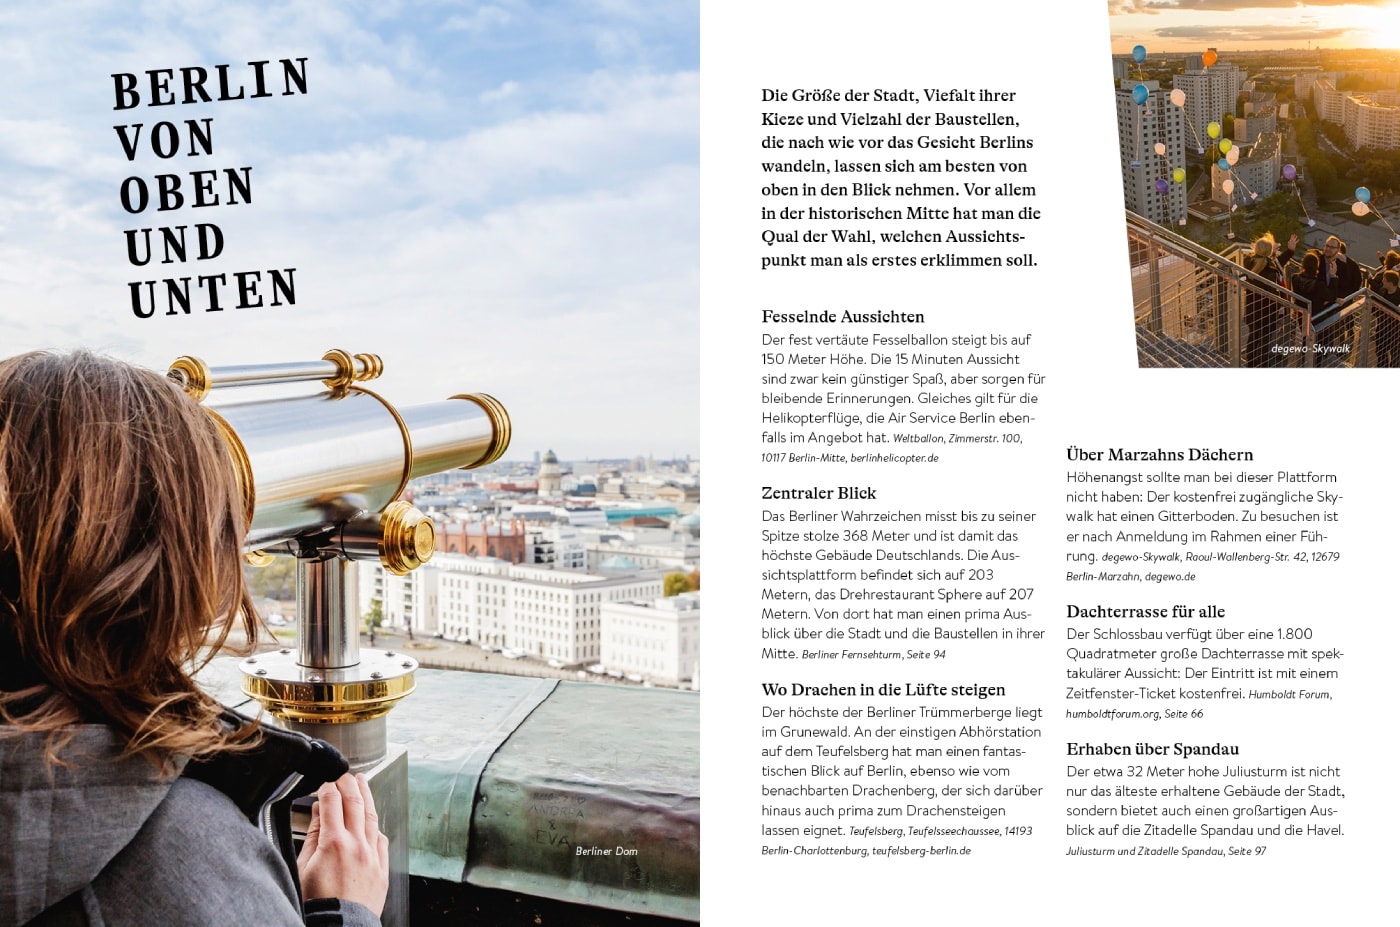 Berlin von oben und unten – Aussichtspunkte und Unterwelten // HIMBEER